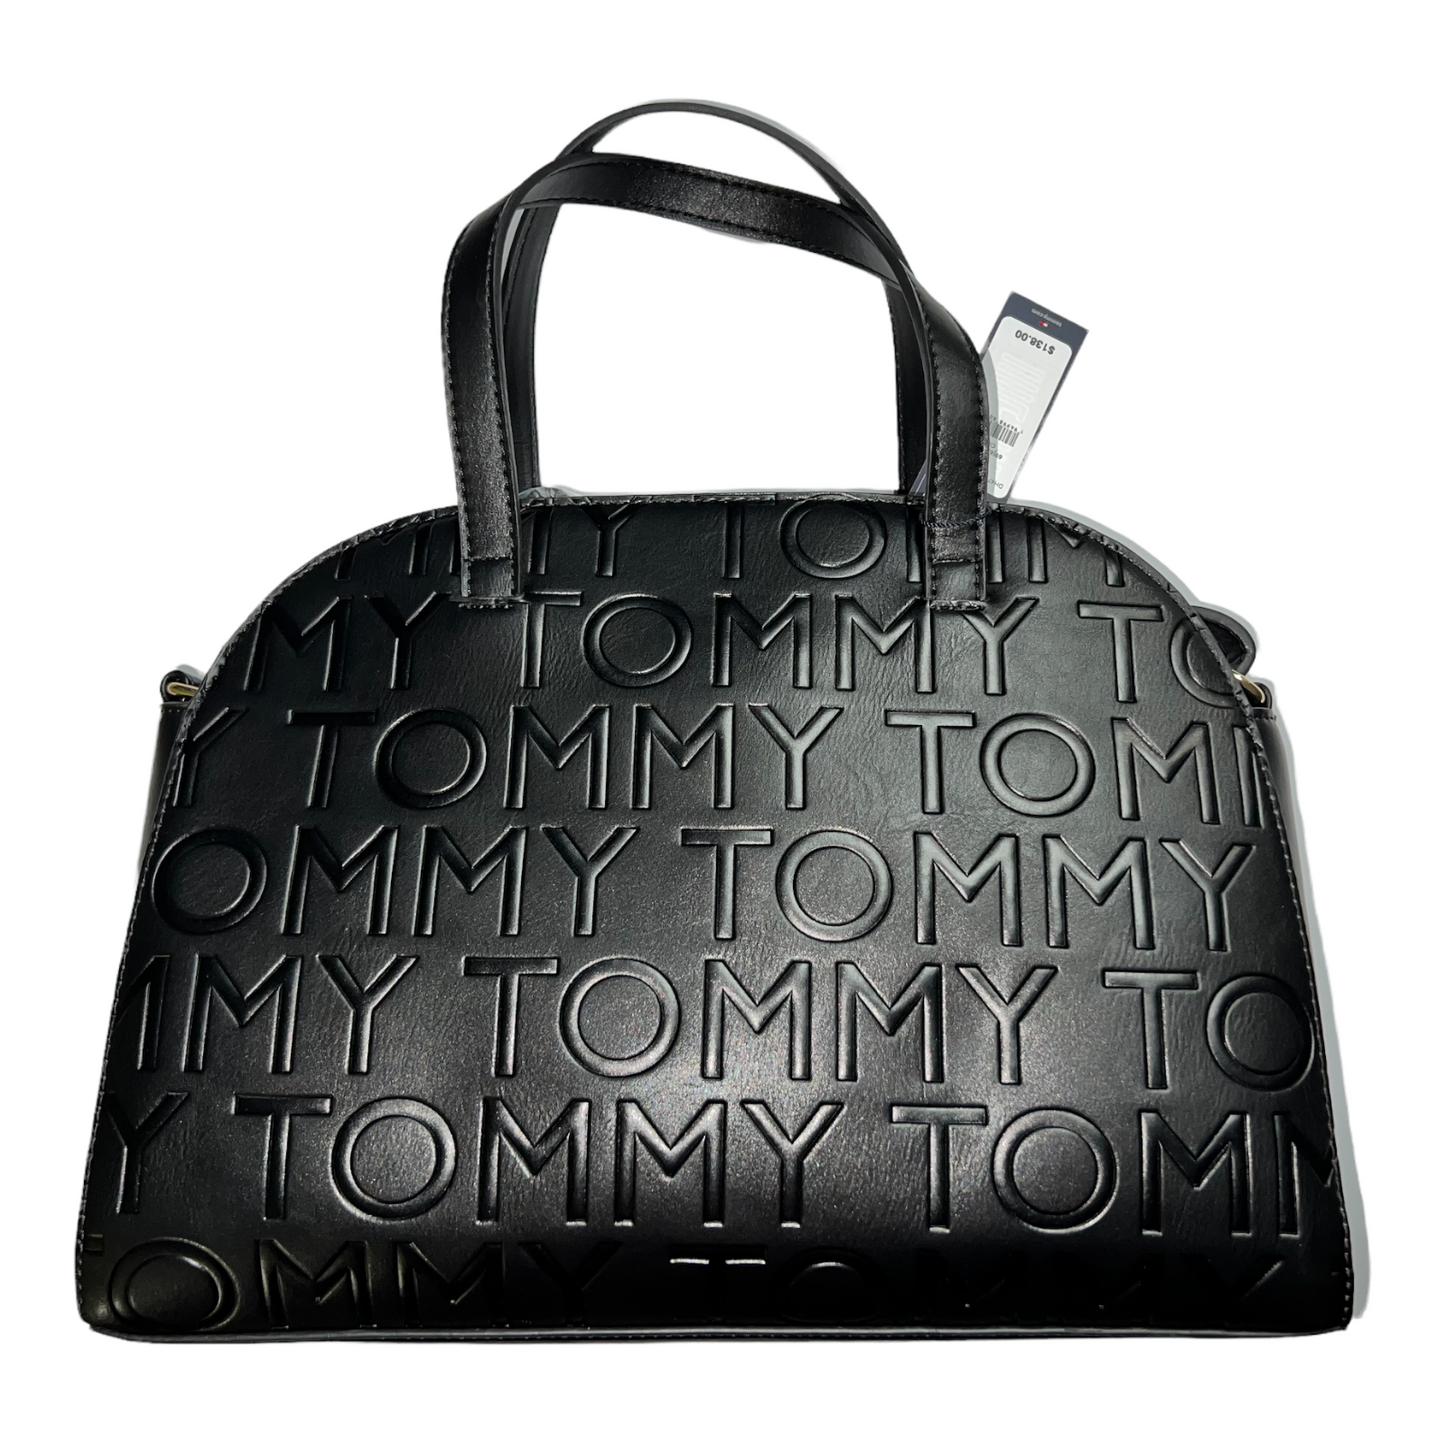 New Tommy Hilfiger Handbag.